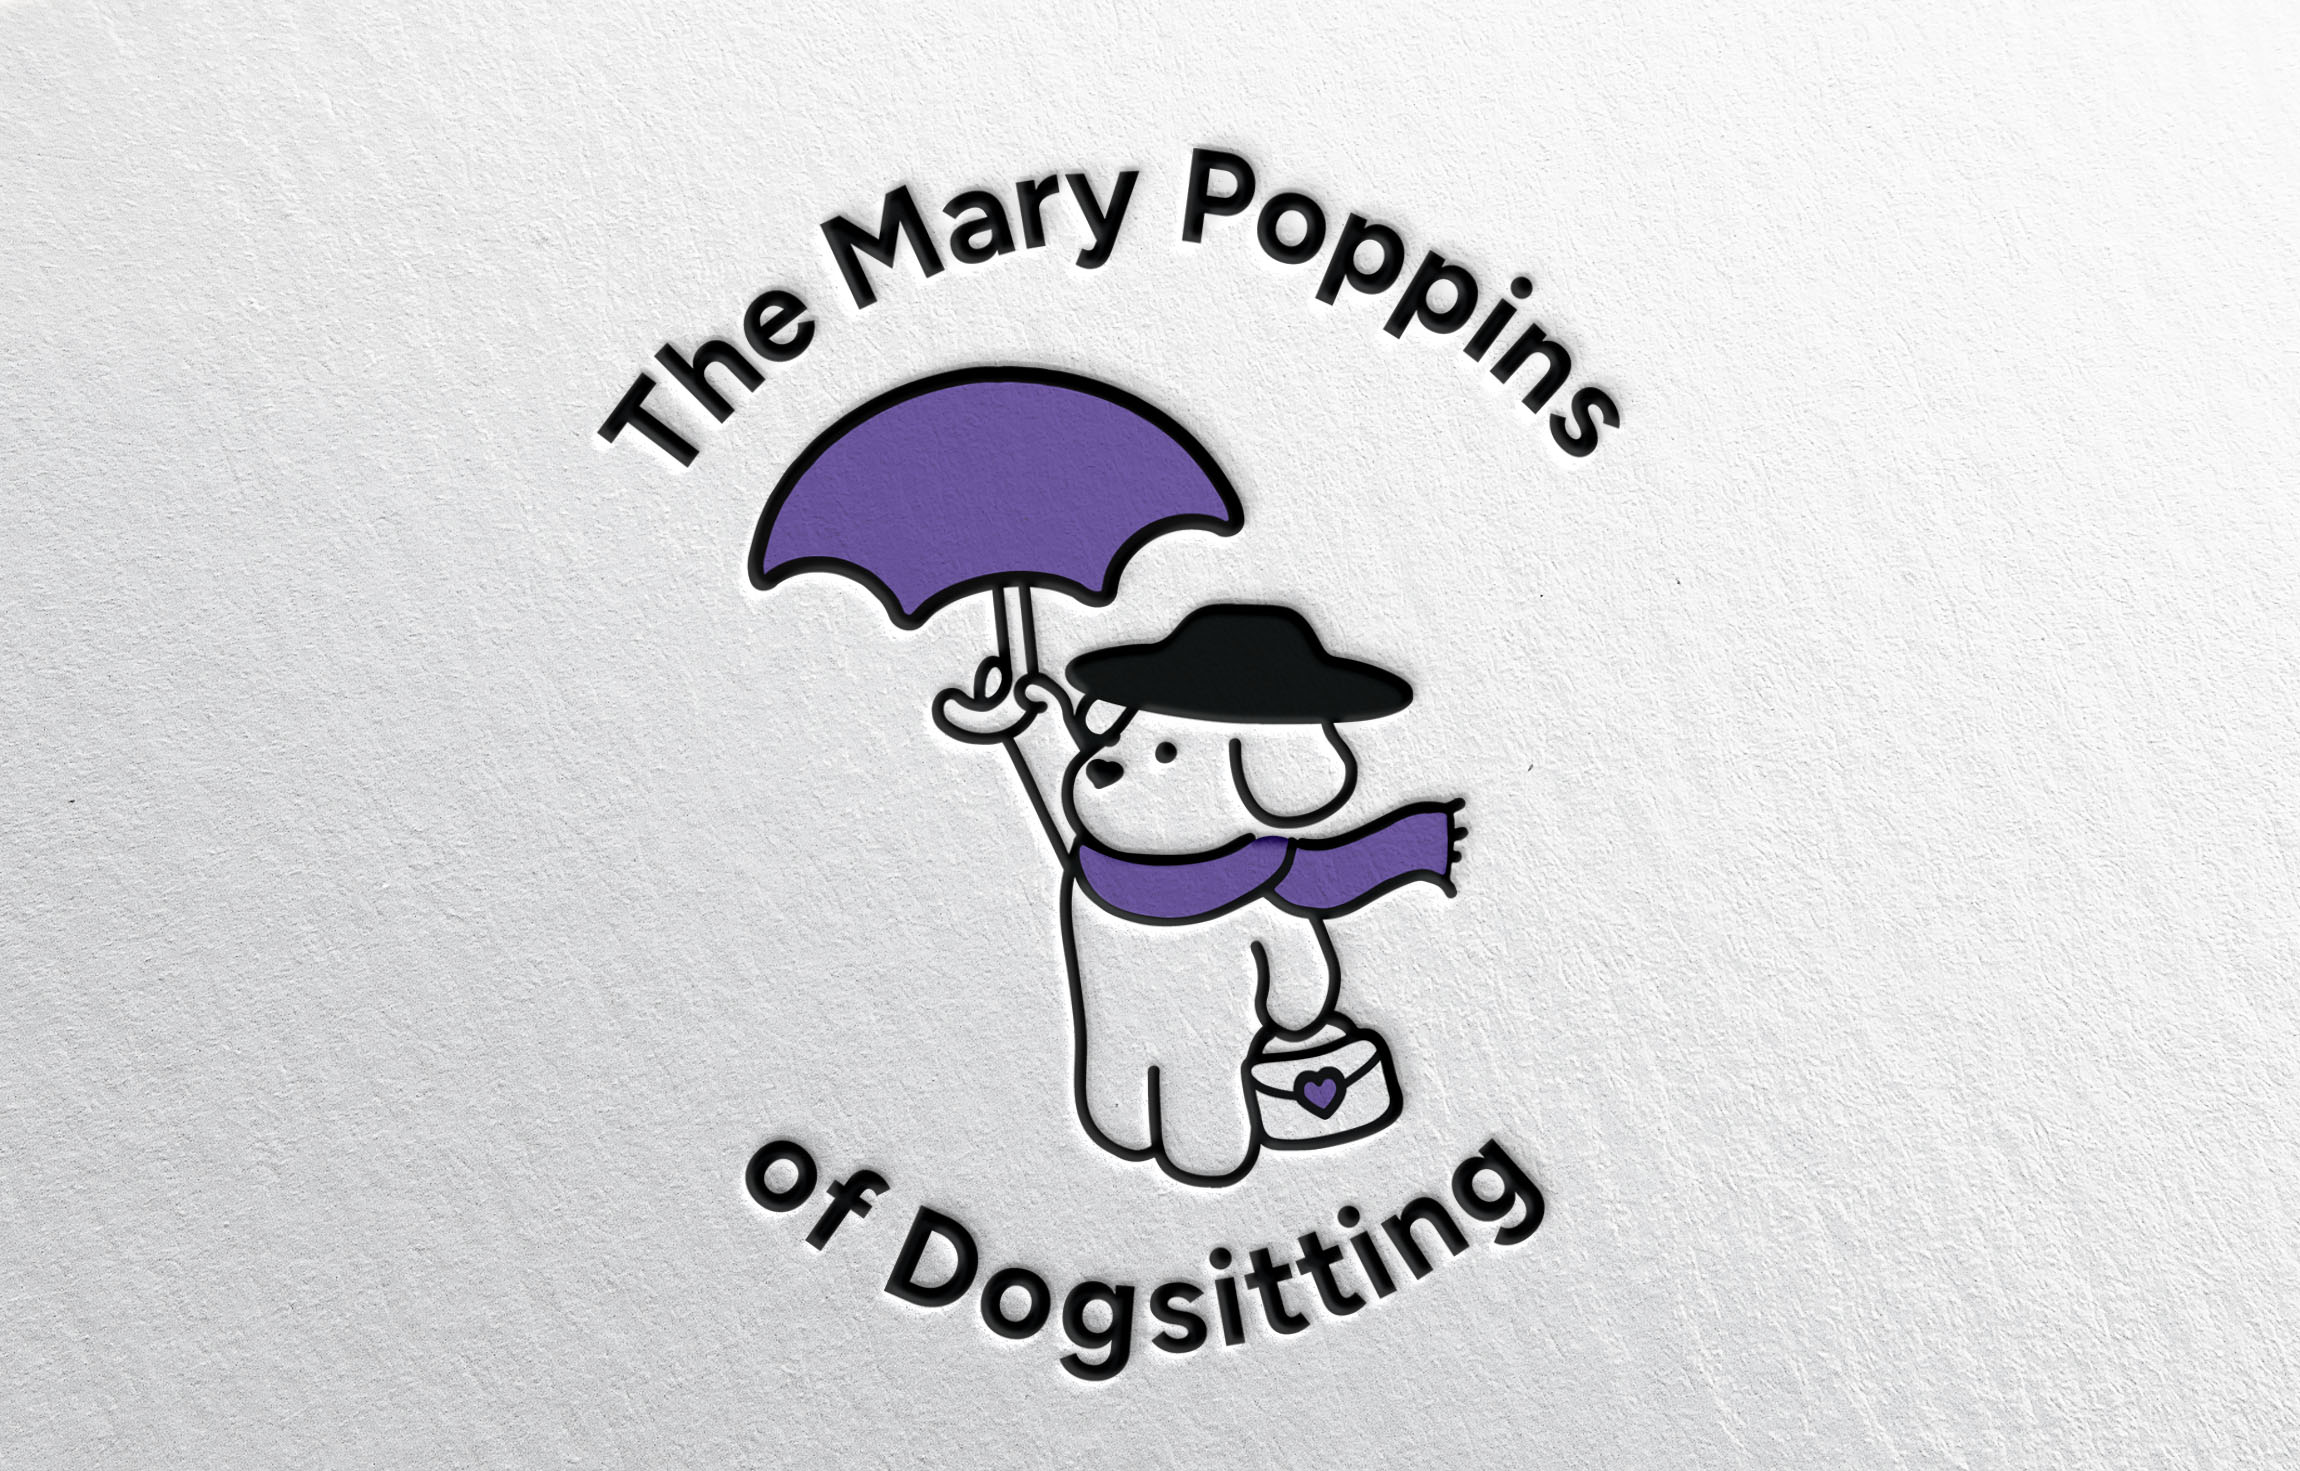 Mary Poppins Dog Logo Holding Umbrella and Suitcase